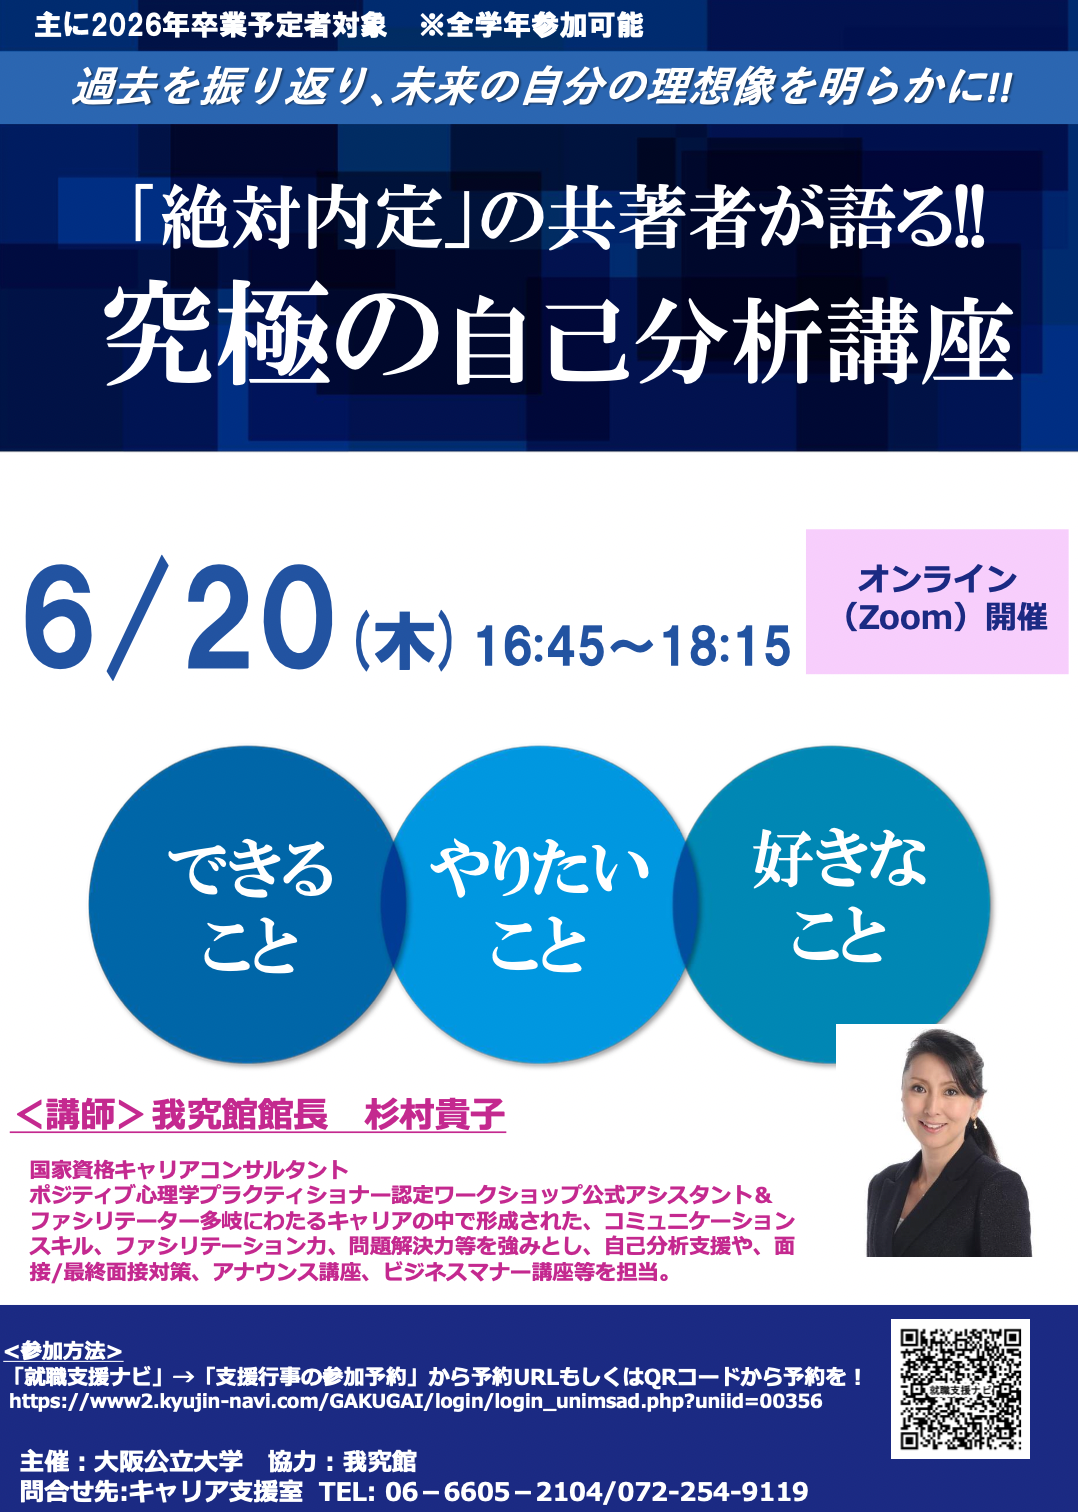 我究館館長の杉村貴子が大阪公立大学で『自己分析』をテーマとした講座を開催しました。